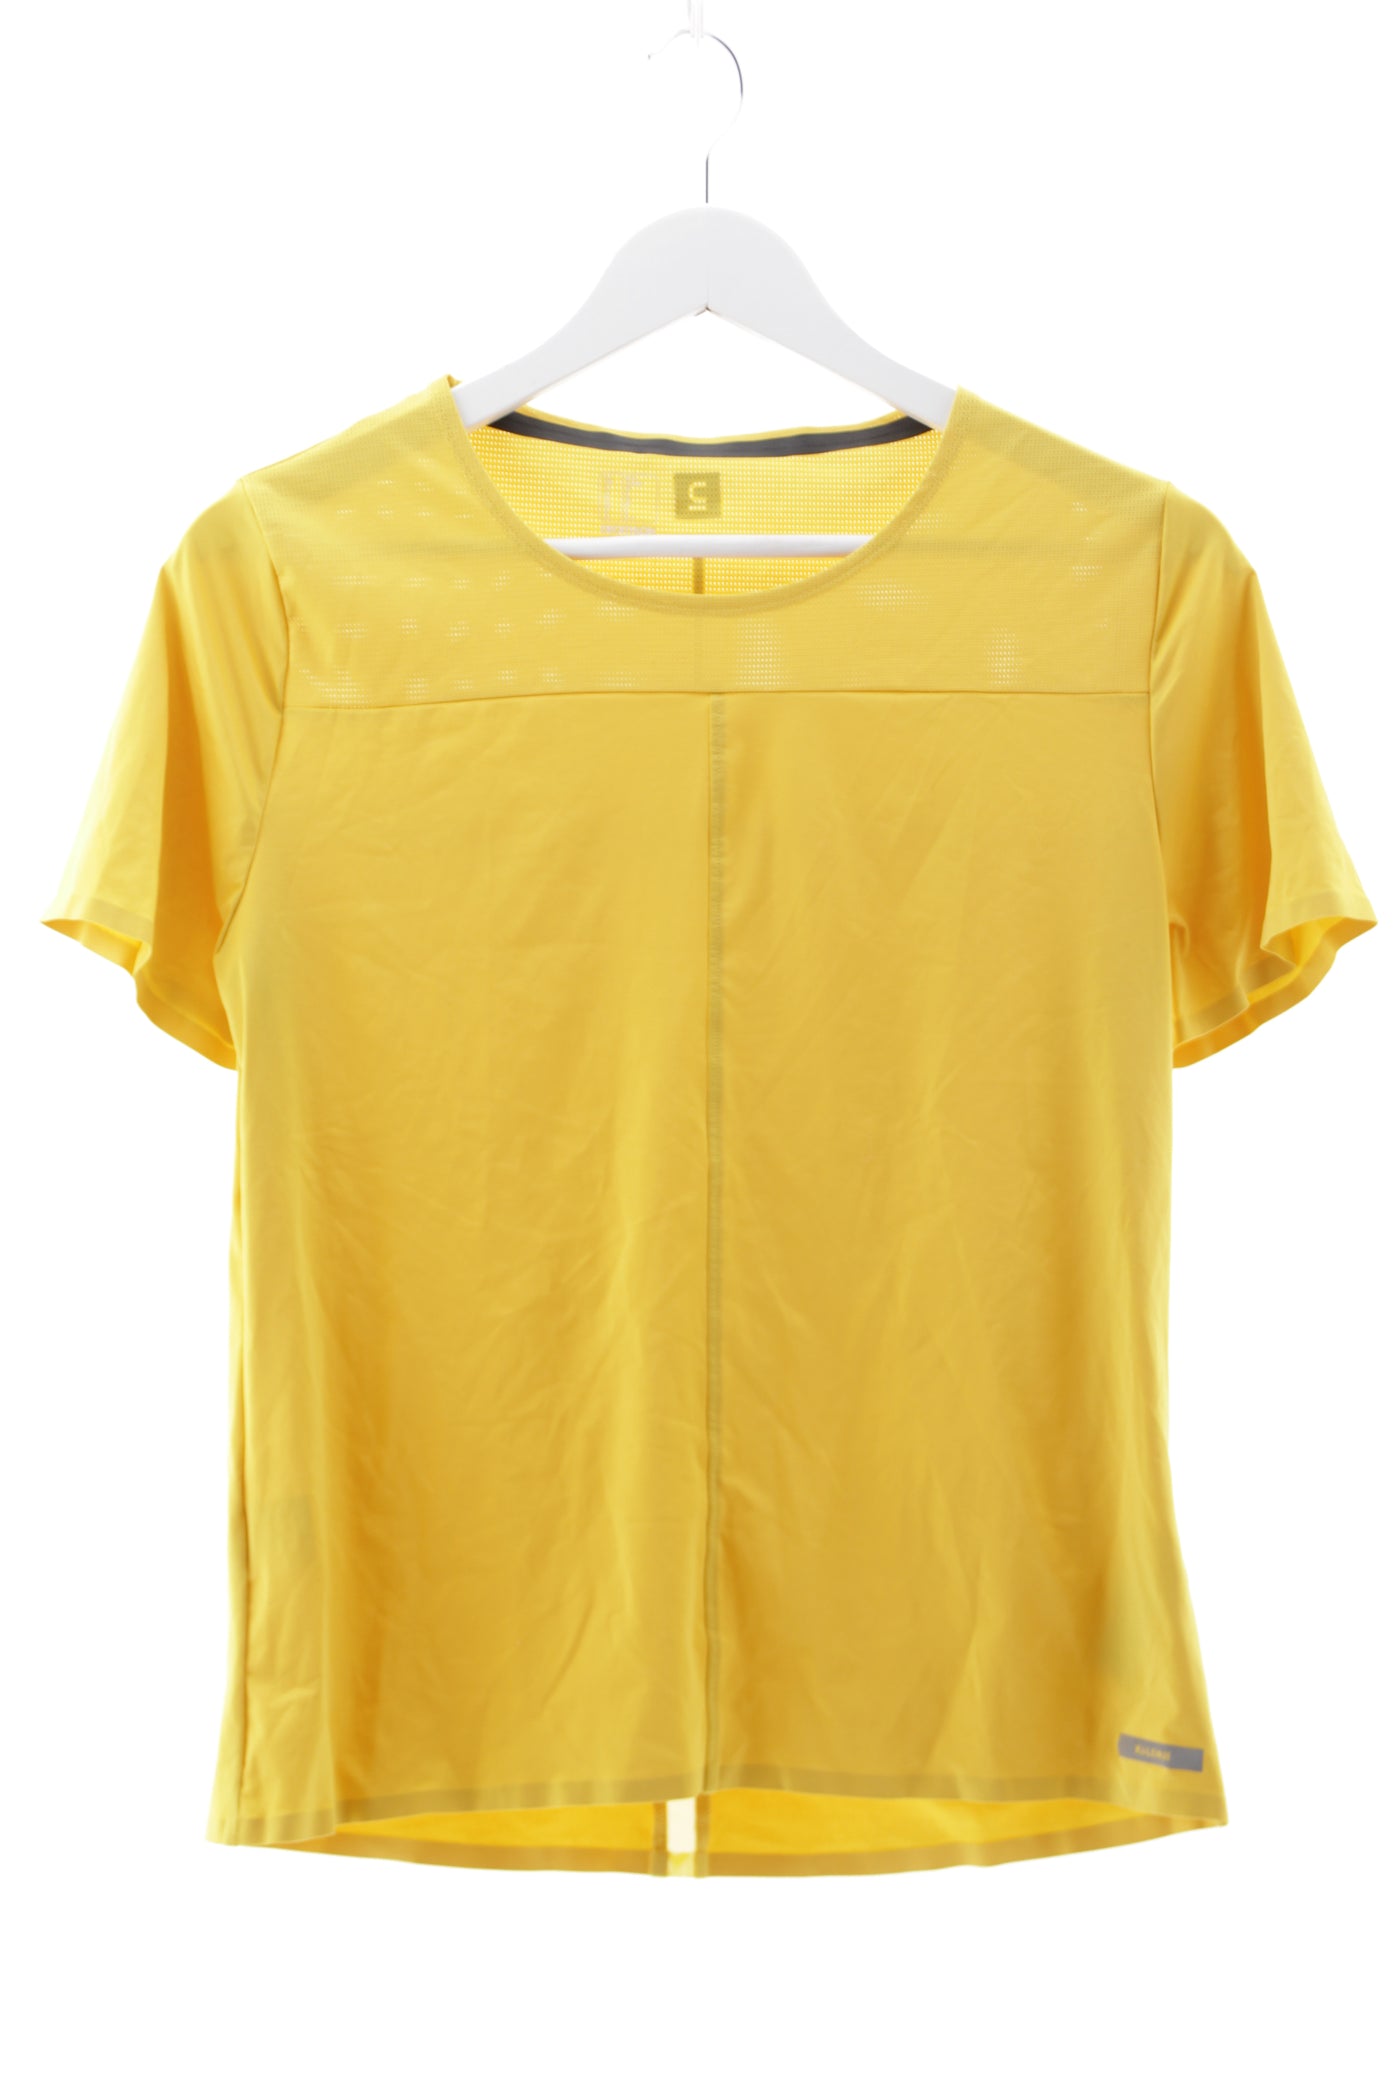 Camiseta técnica deportiva amarilla